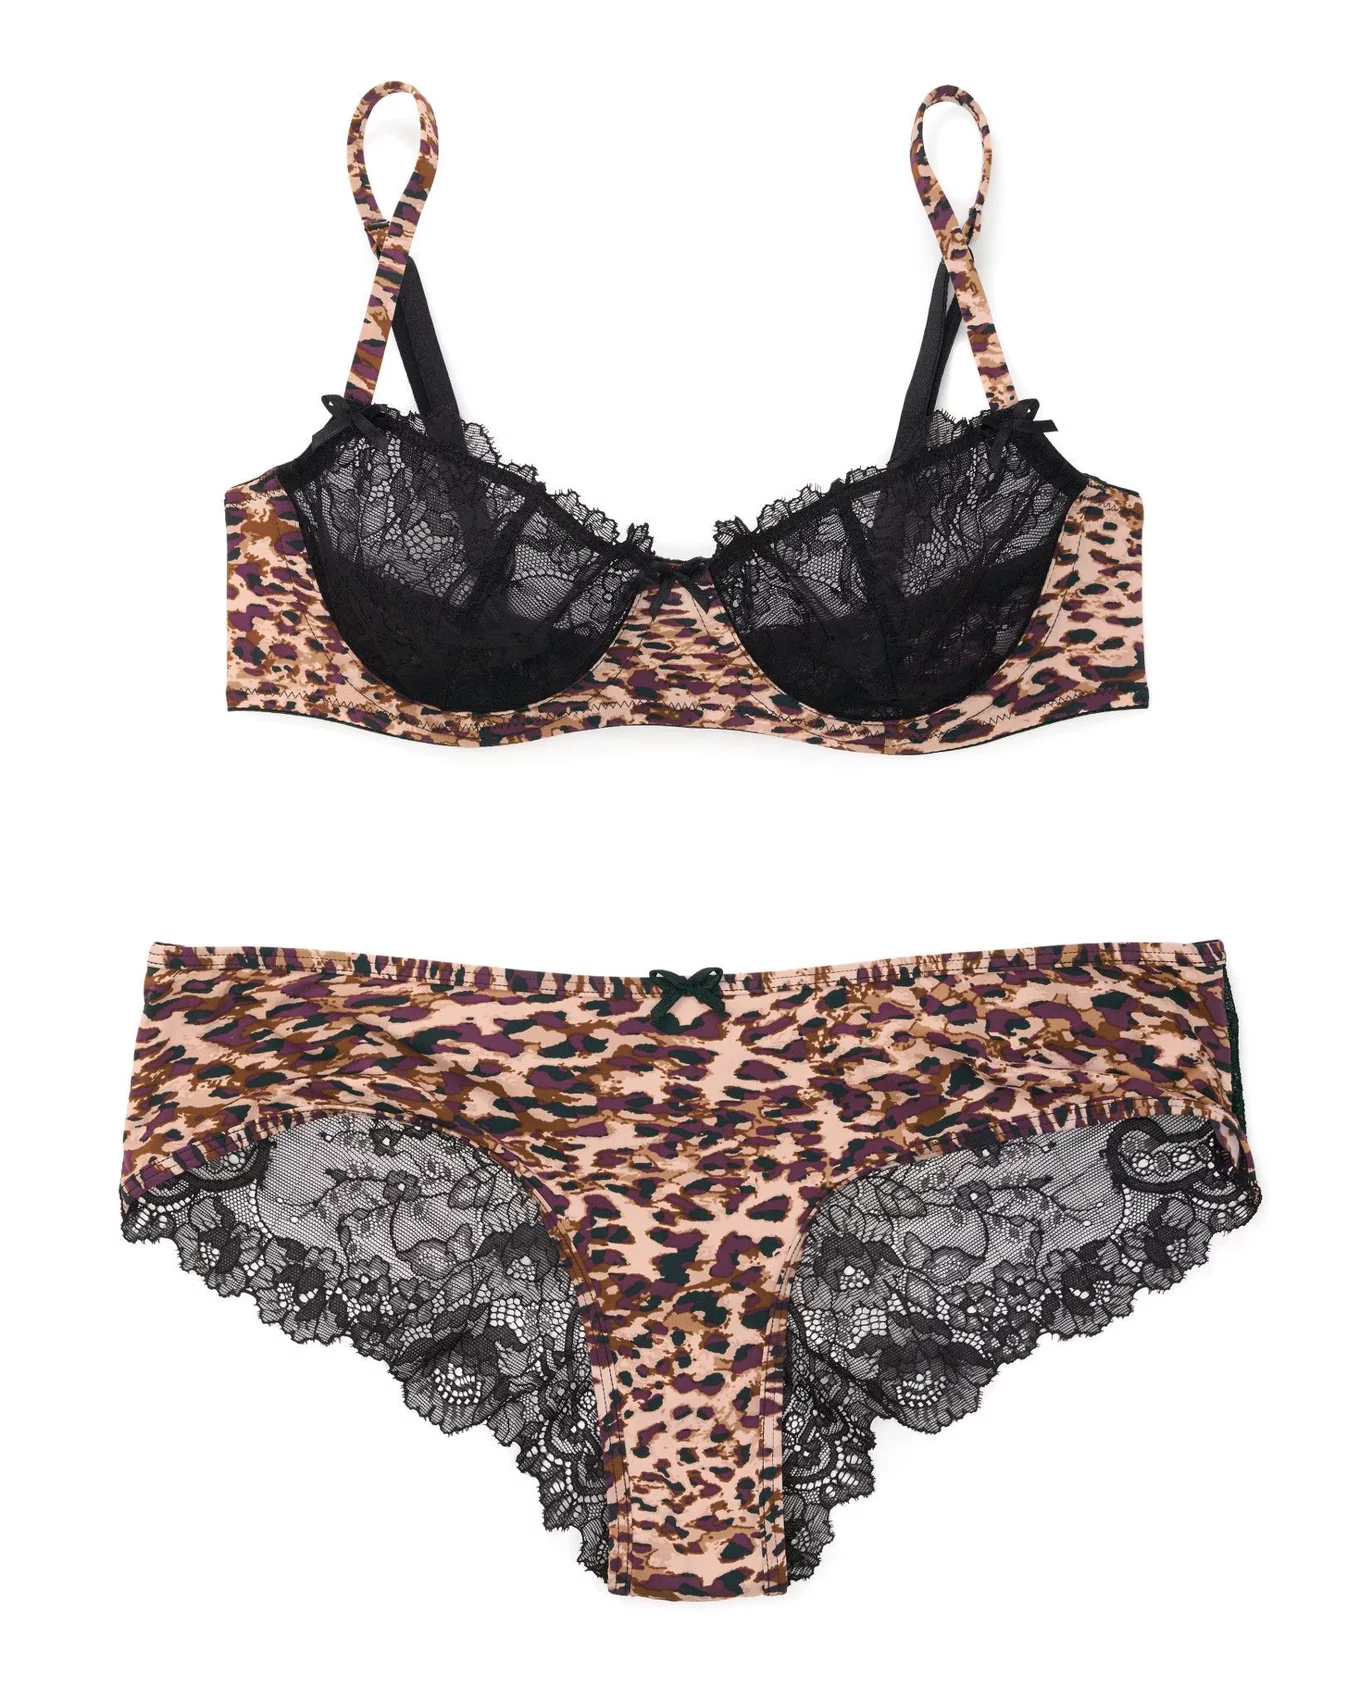 Victoria's Secret black strap white animal print leopard cheetah bra  bralette S 